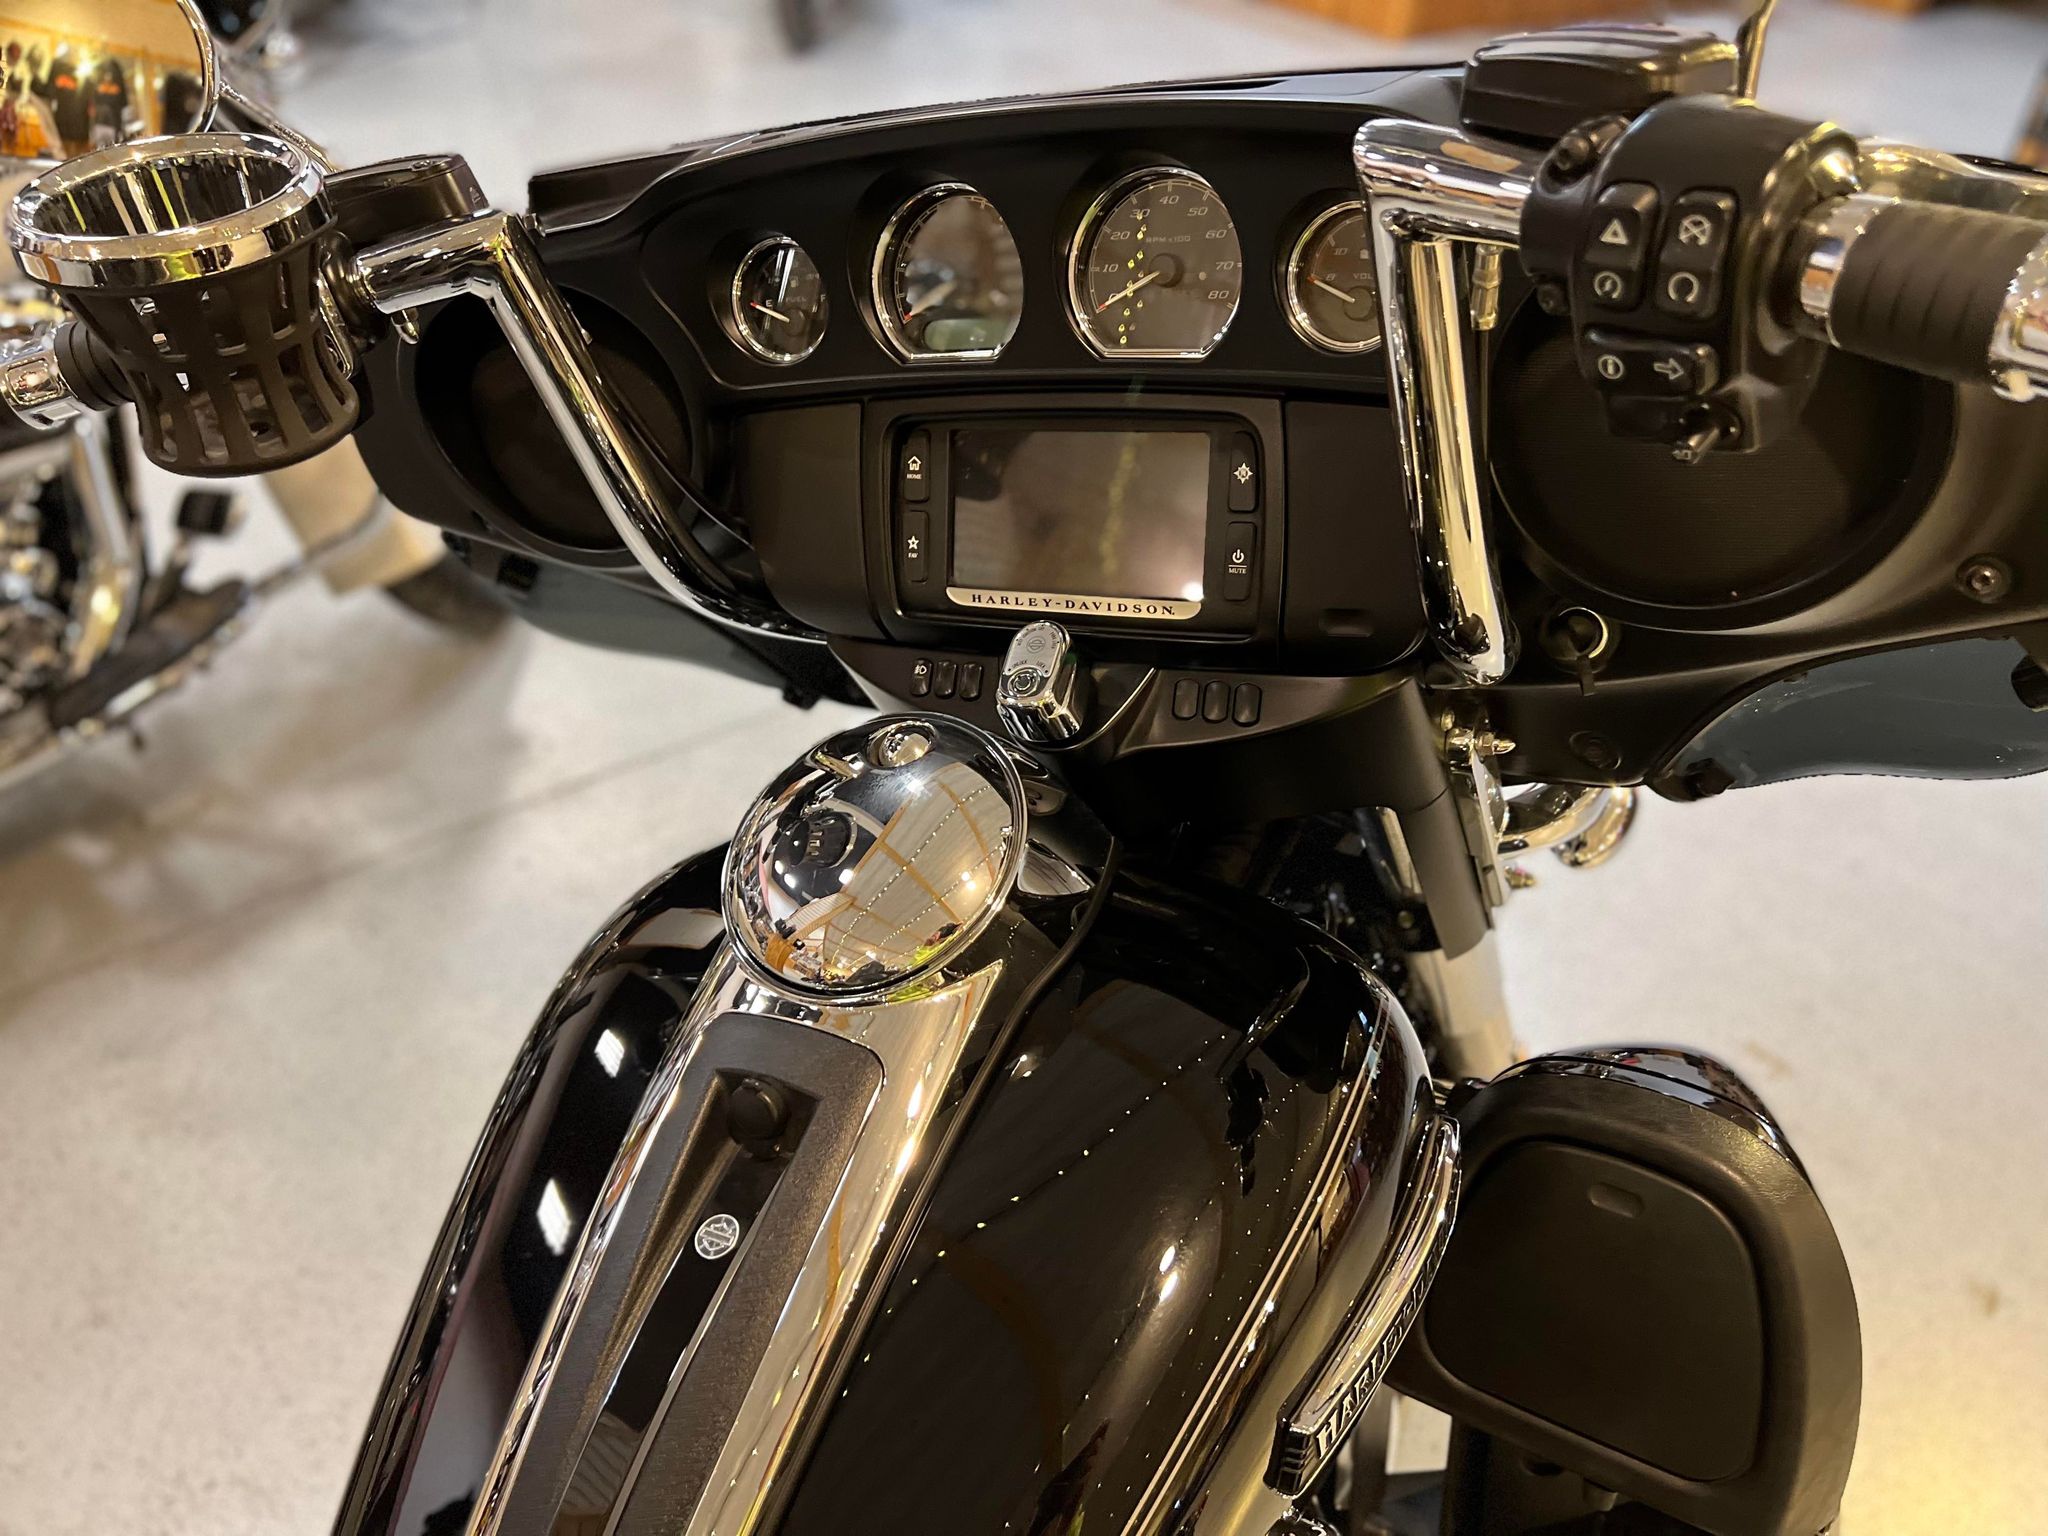 2016 Harley Davidson FLHTCU / ELECTRA GLIDE ULTRA CLASSIC